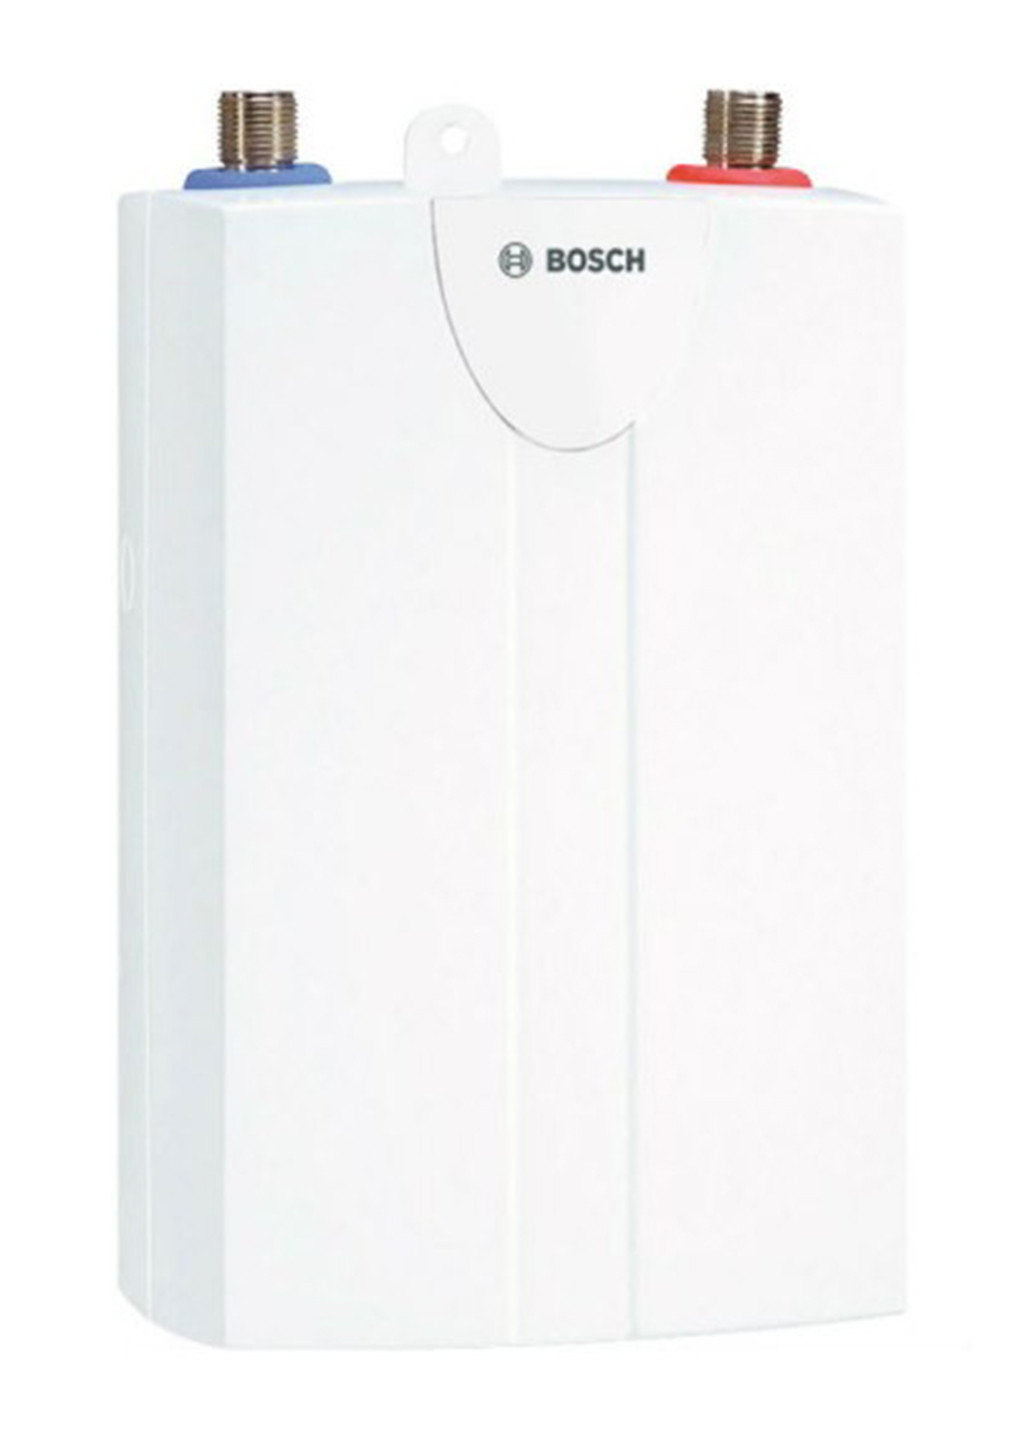 Електричний проточний водонагрівач Bosch Tronic 1000 6 T білий